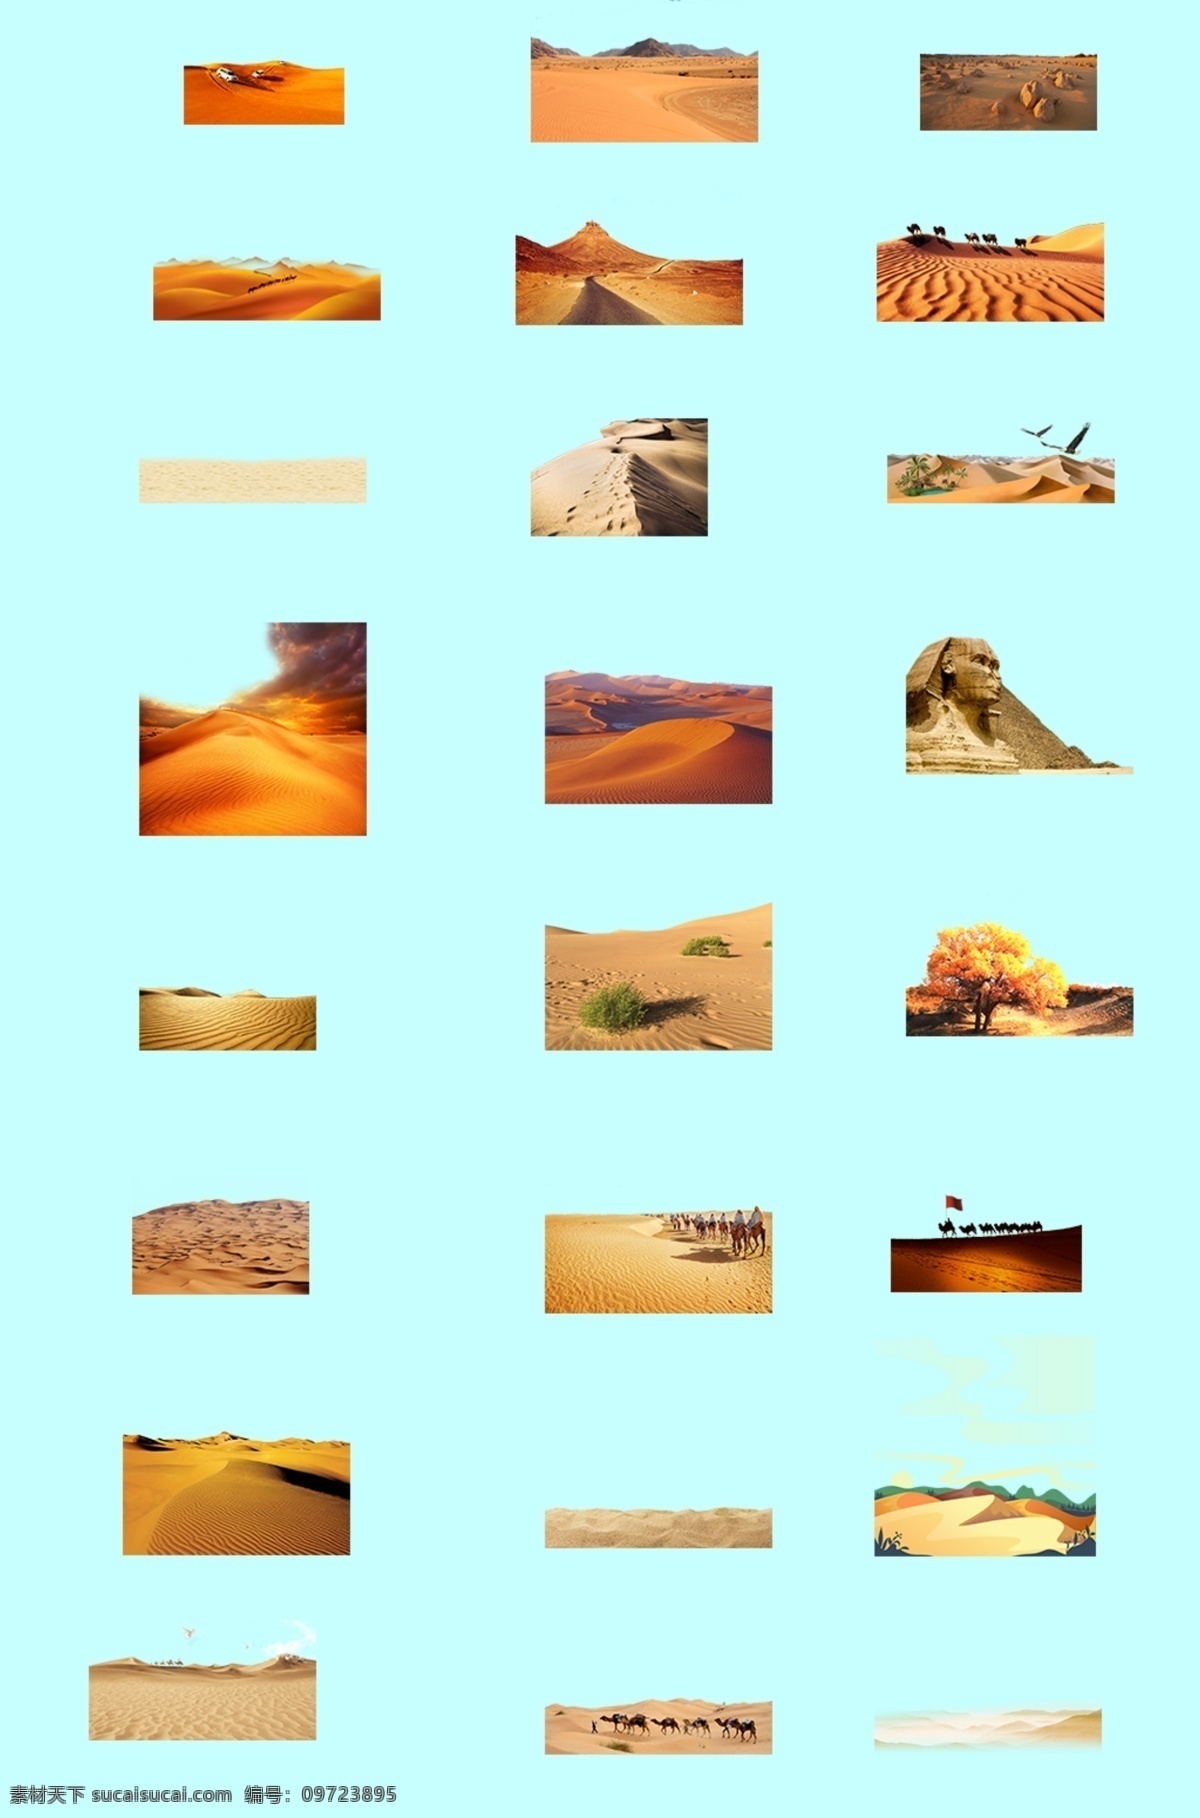 沙漠素材图片 沙 沙漠 沙漠素材 摄影素材 自然景观 自然风景 沙漠景观 沙丘 荒漠 荒芜沙漠 干枯 沙子 沙海 大漠 沙漠丘陵